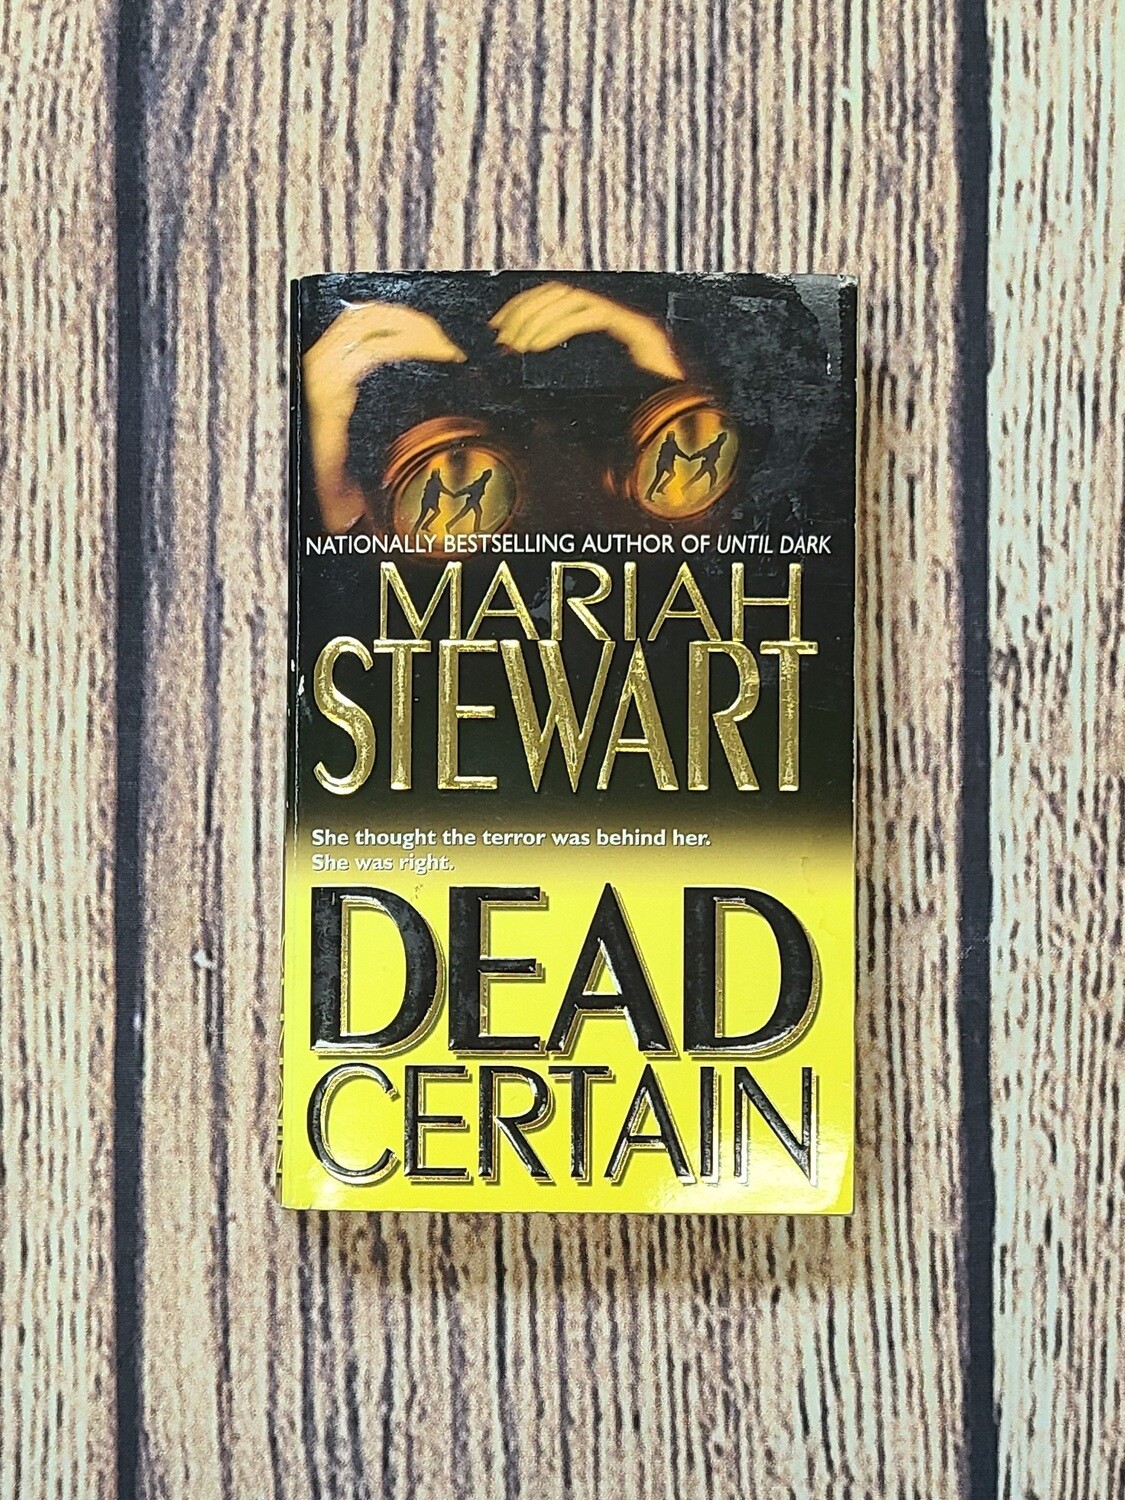 Dead Certain by Mariah Stewart